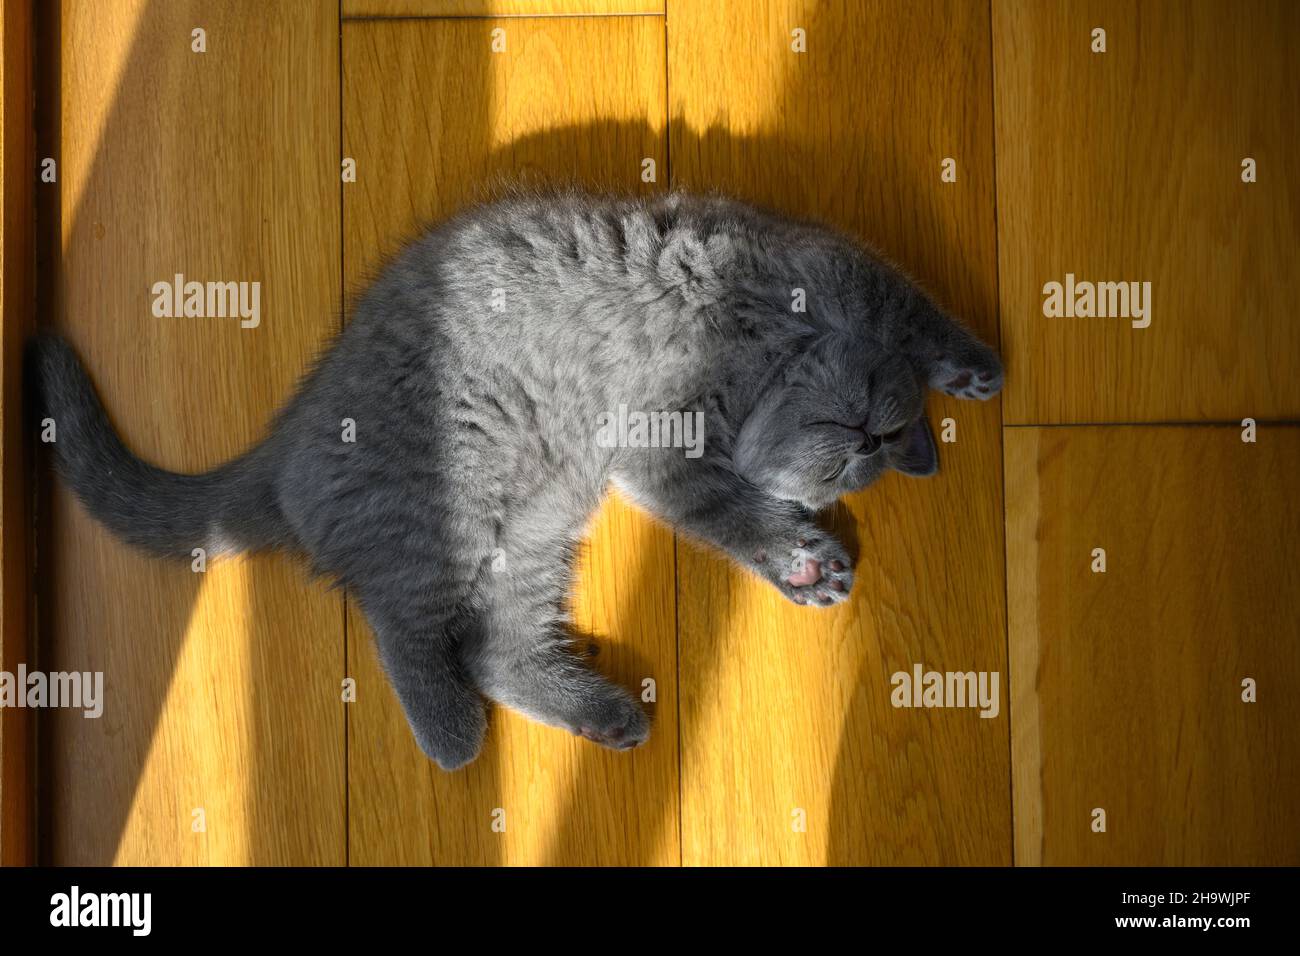 Das Kätzchen schläft in Rückenlage mit den Händen nach oben. Sehr witzige und niedliche Pose, eine blaue britische Kurzhaar-Katze, die auf einem Holzboden im Zimmer liegt Stockfoto